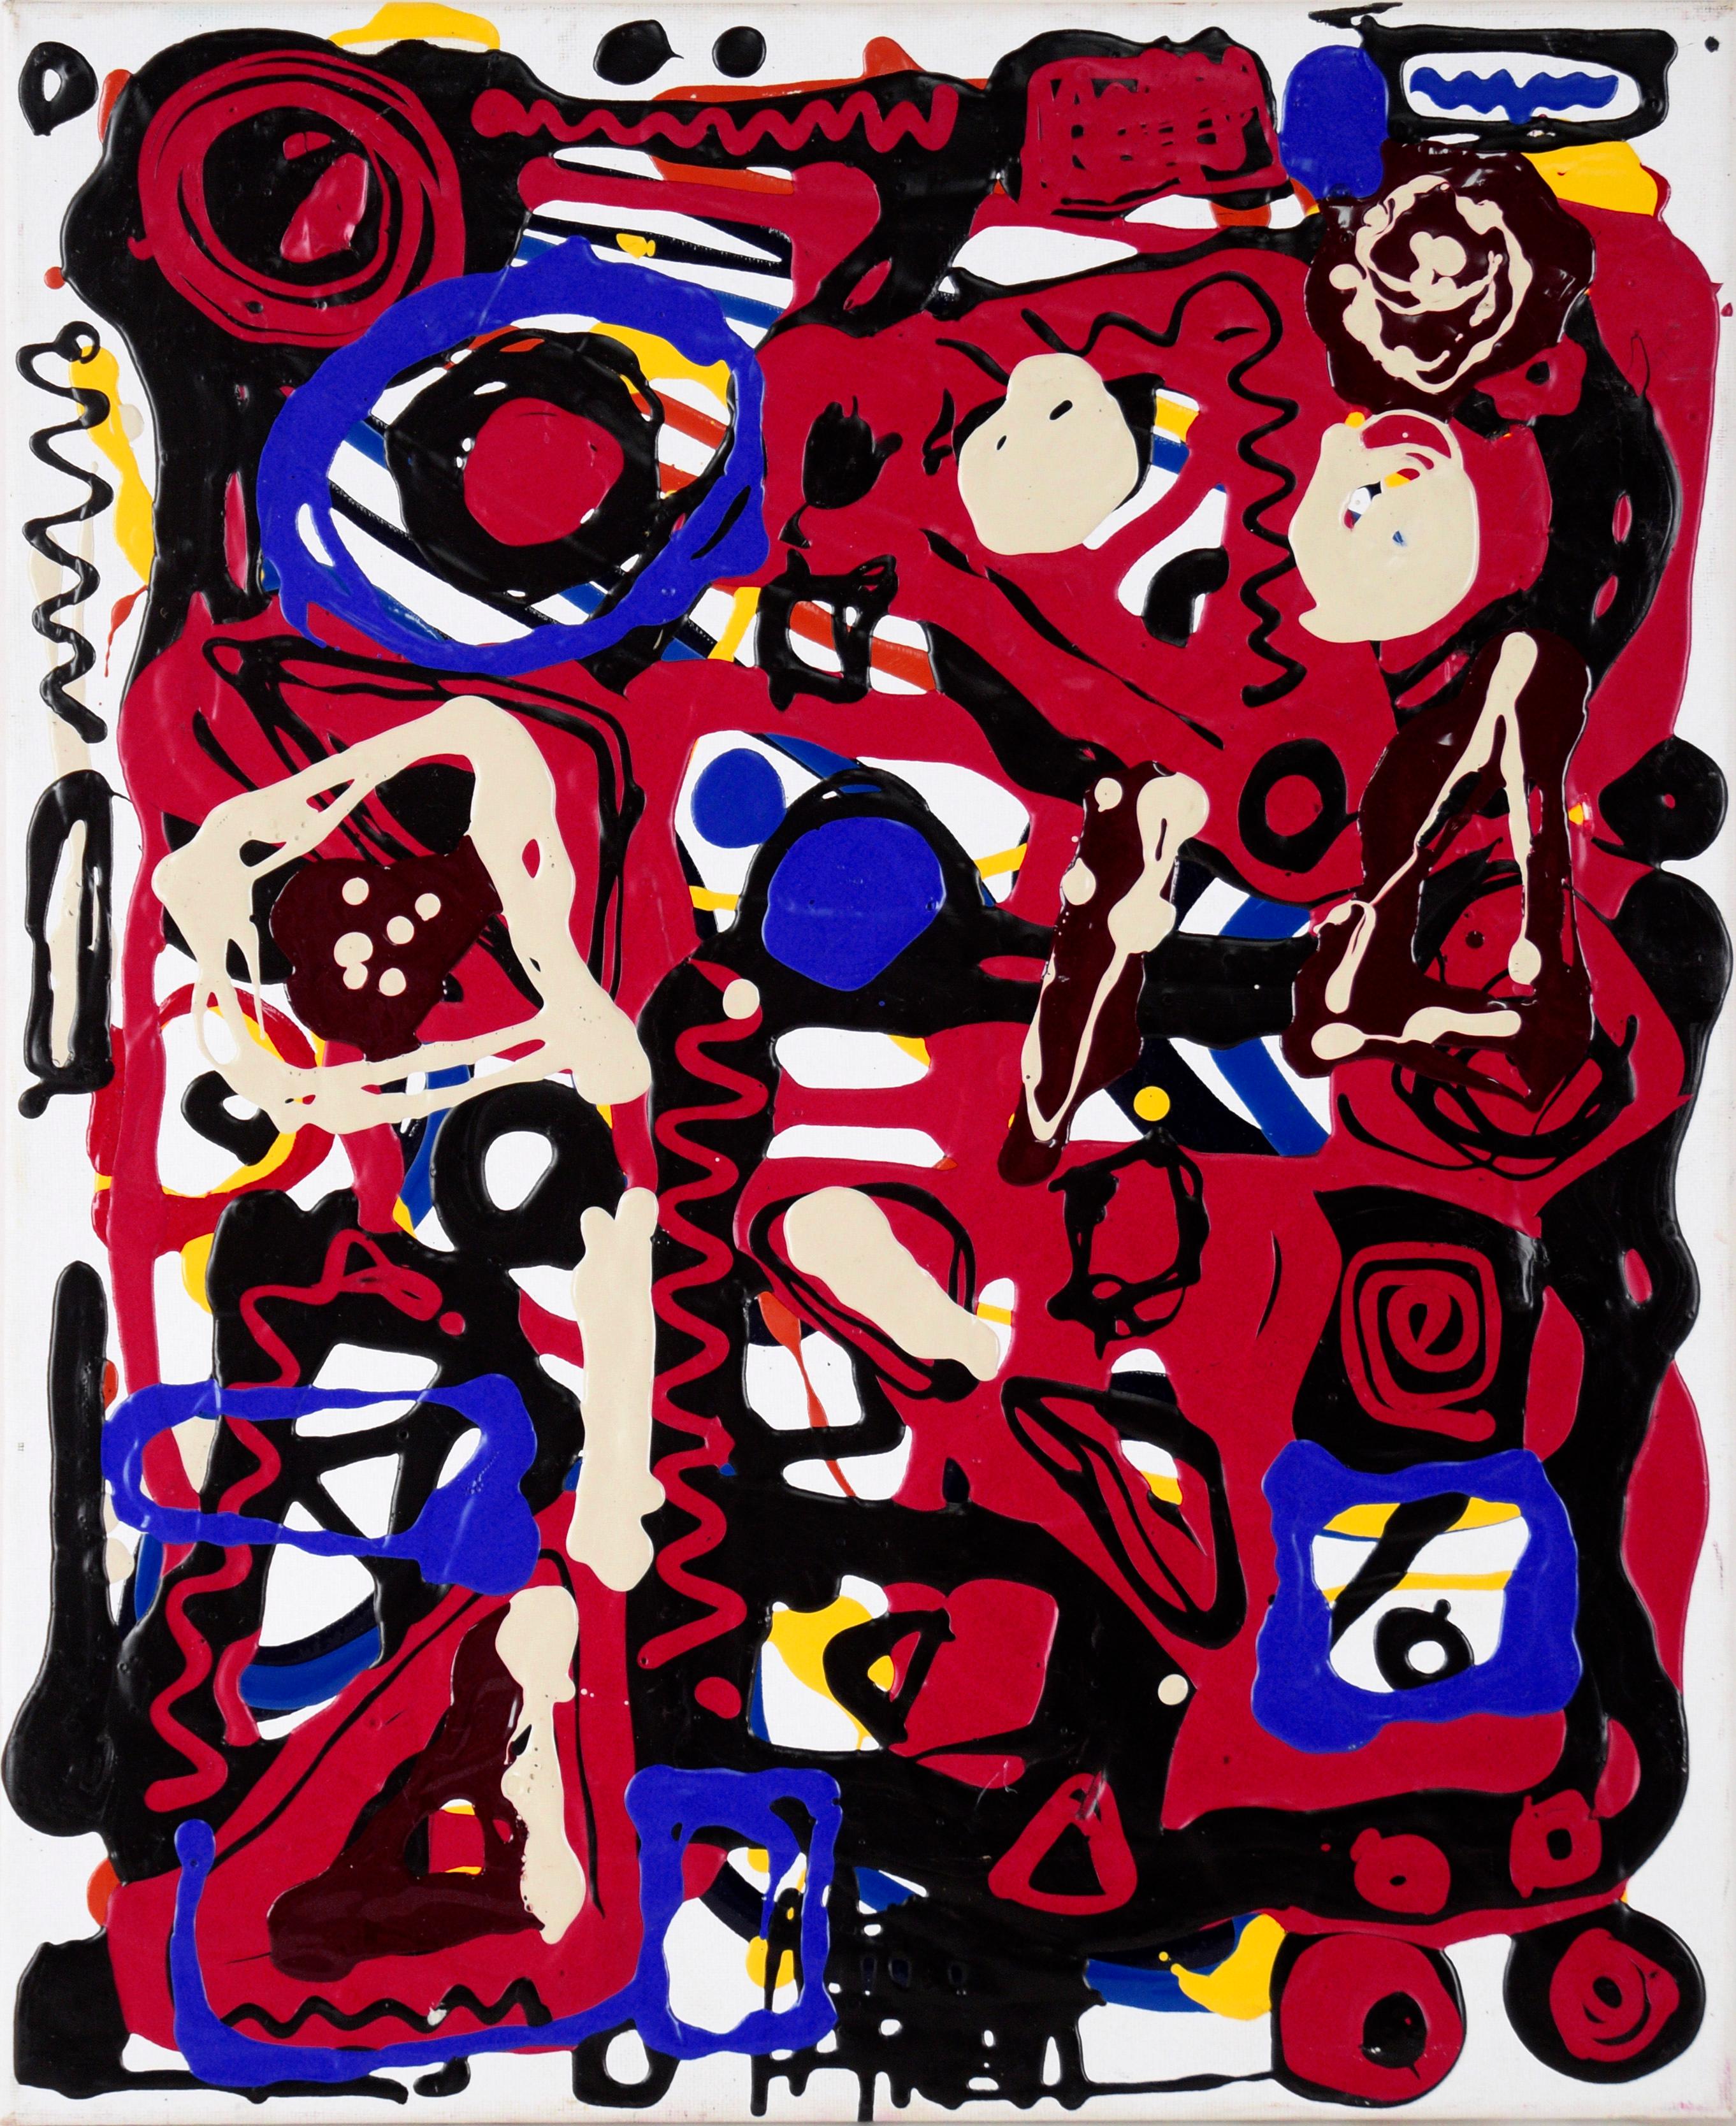 Abstract Painting Unknown - Composition expressionniste abstraite en acrylique rouge, noire et bleue sur toile 